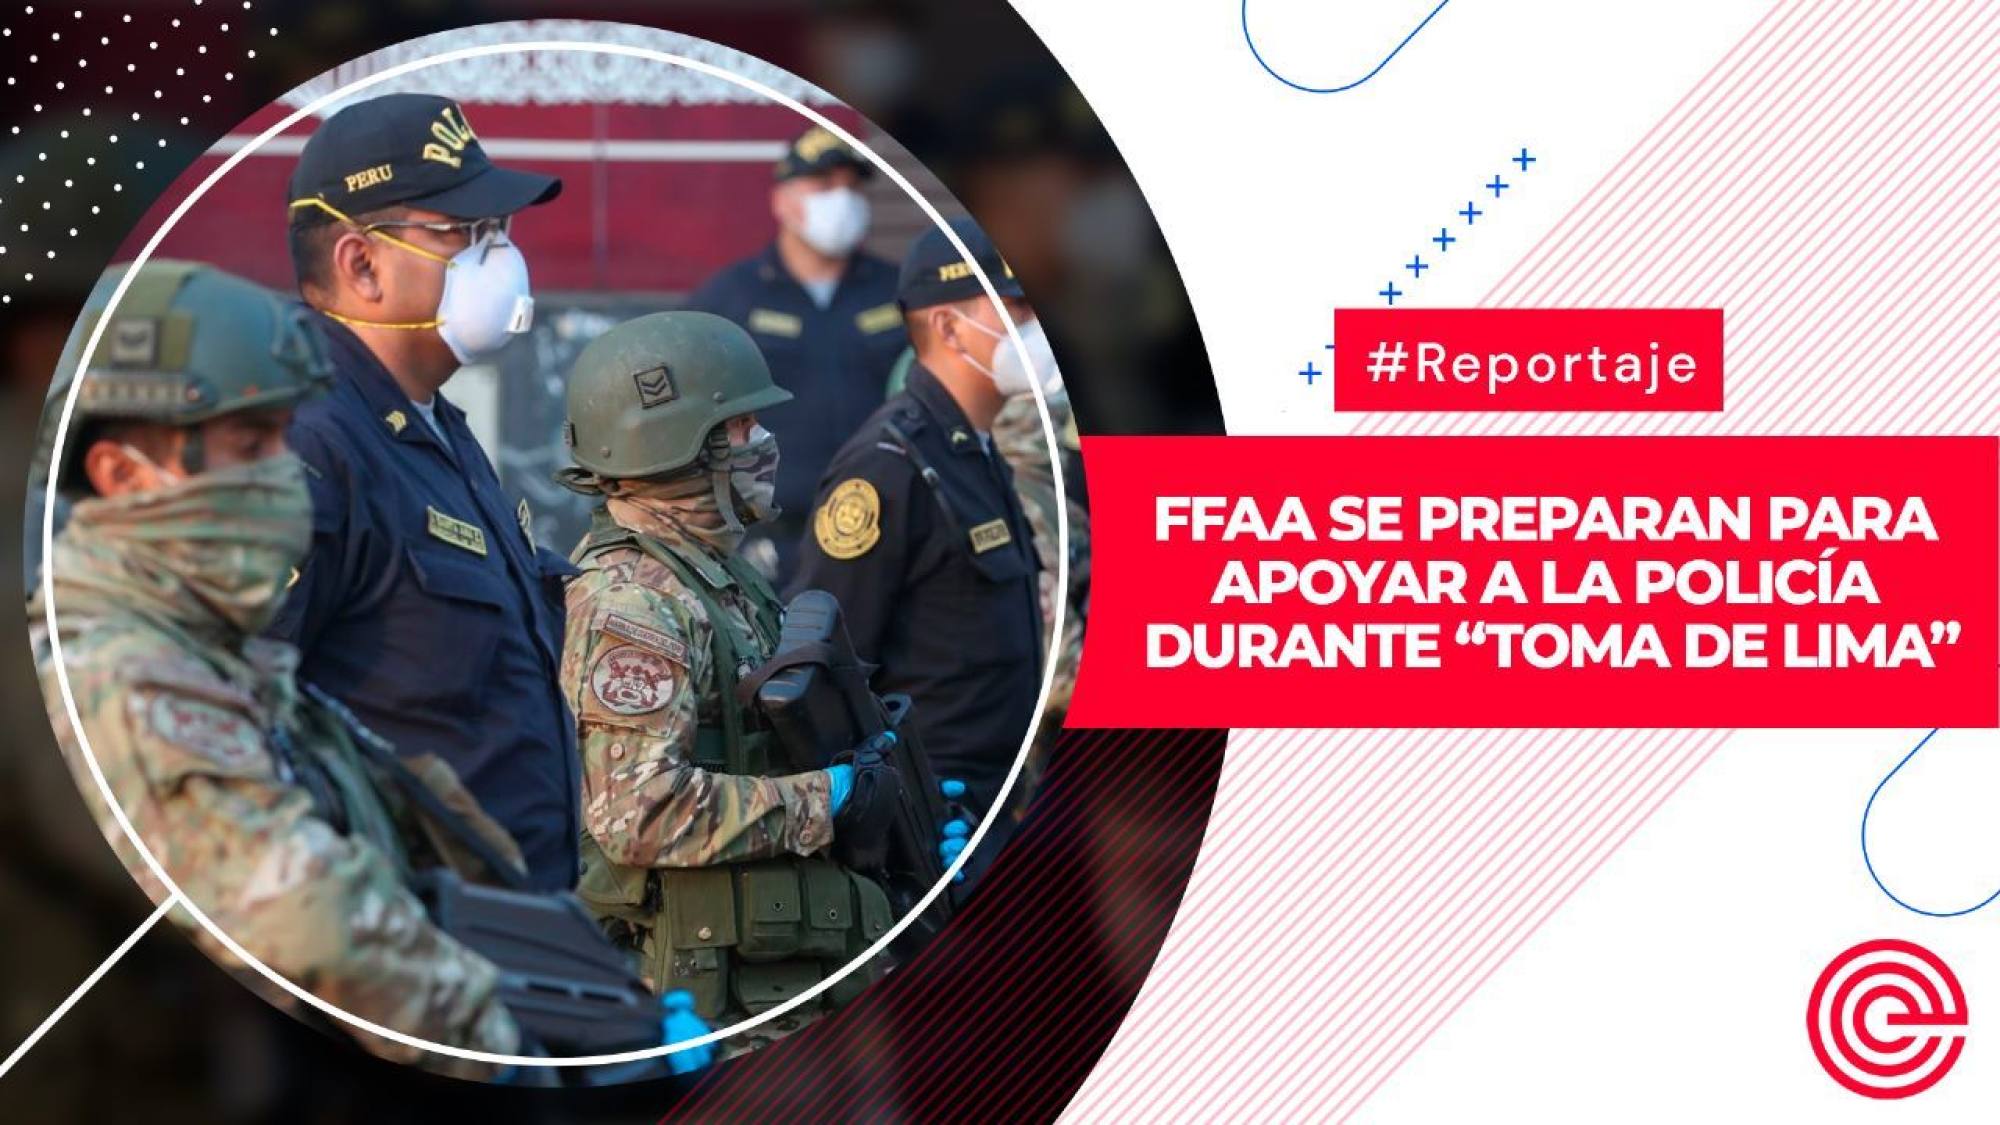 FFAA se preparan para apoyar a la Policía durante “Toma de Lima”, Epicentro TV